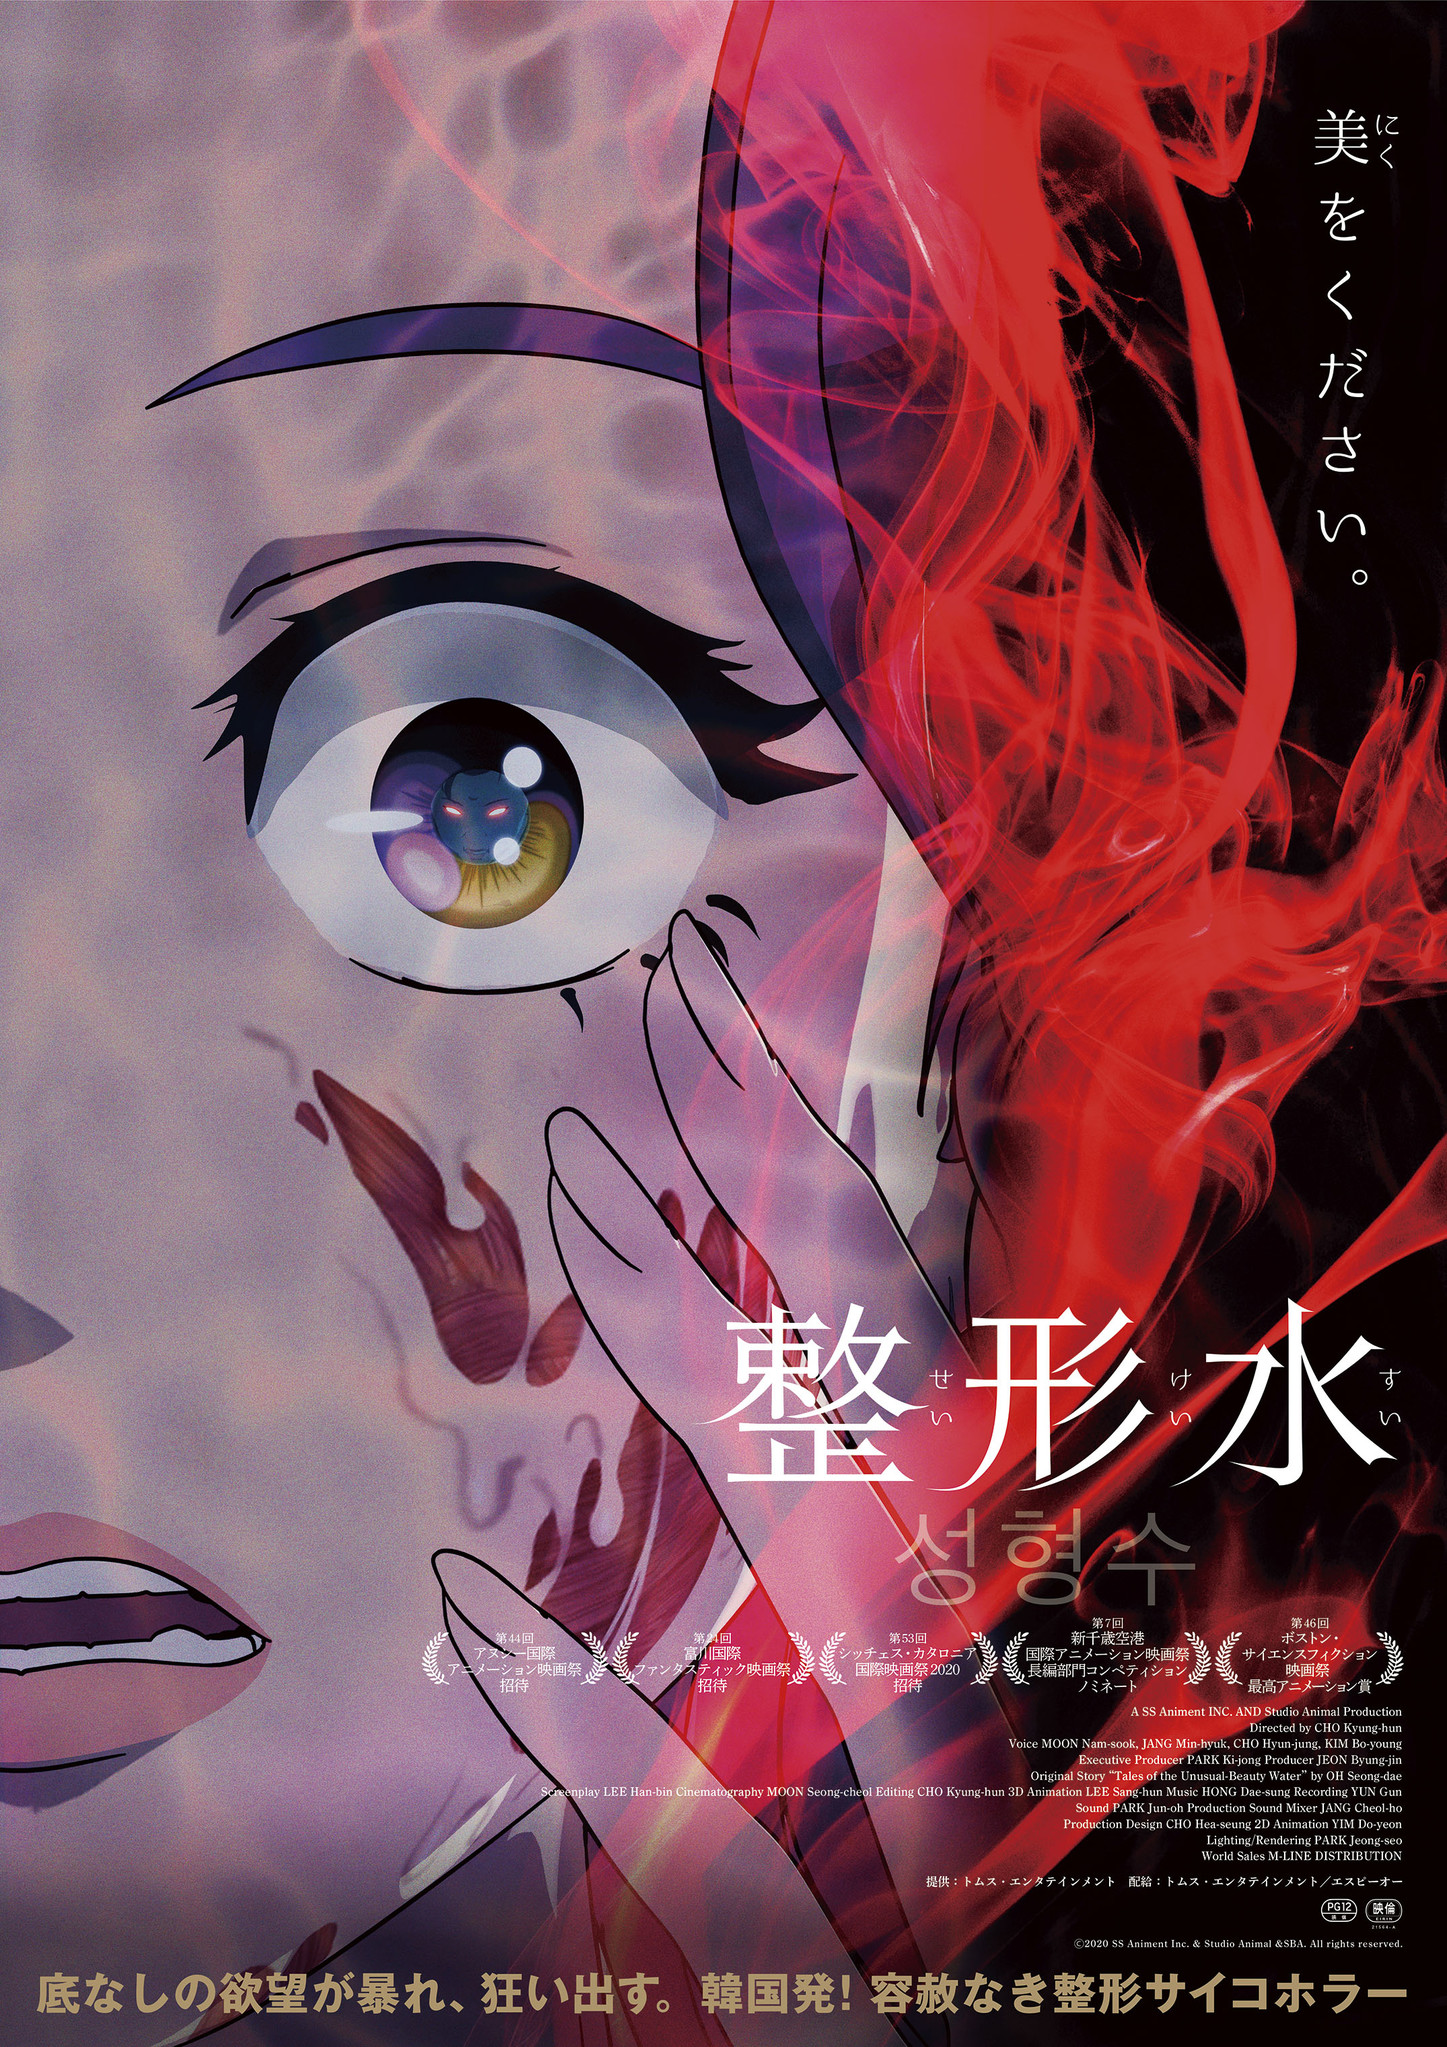 【LINEマンガ】オムニバス作品『奇々怪々』人気エピソード「整形水（69話~79話）」の劇場版が日本公開決定！